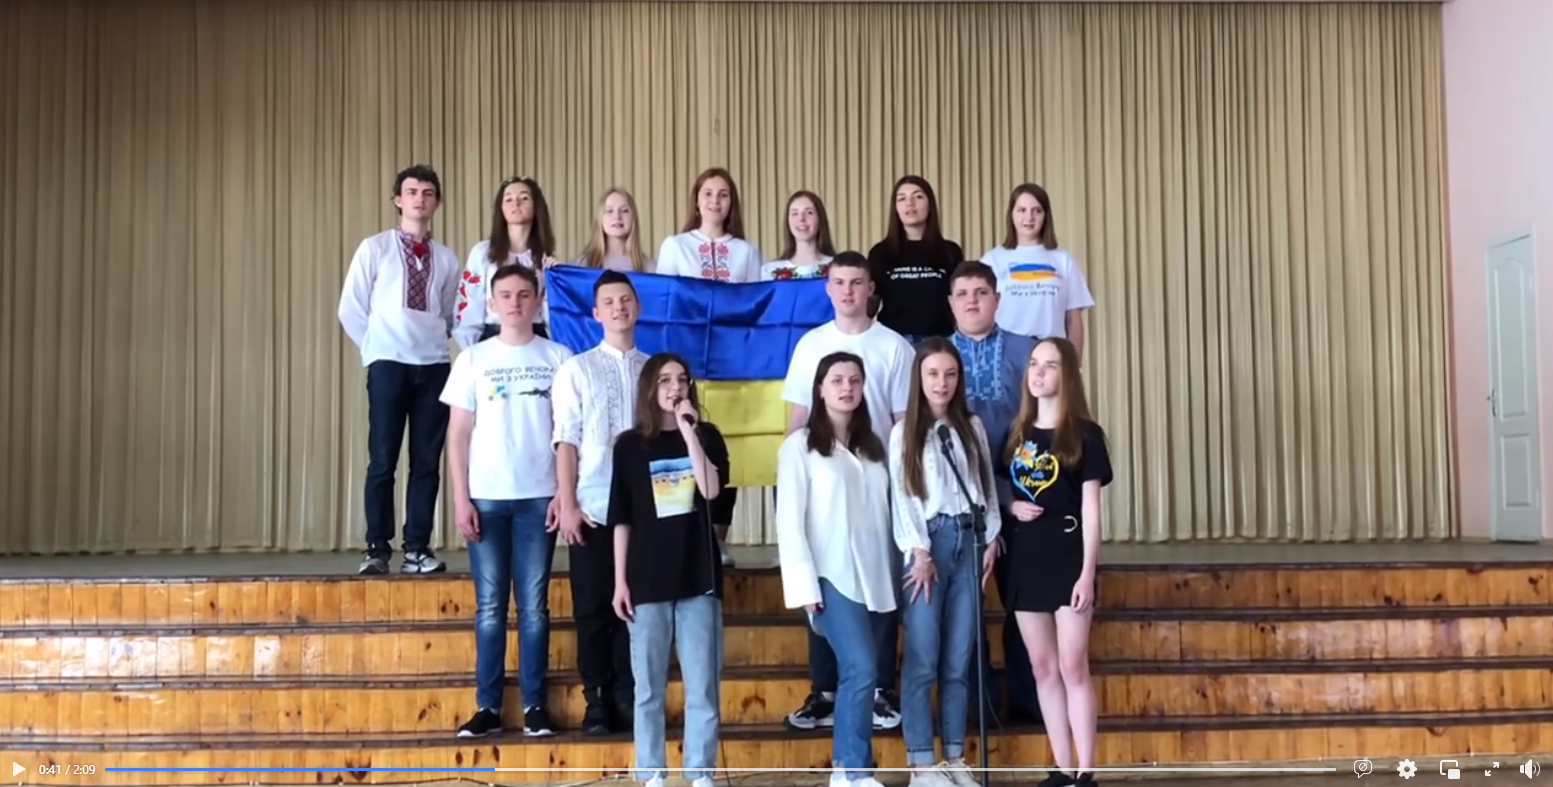 Випускники вінницьких шкіл долучились до патріотичного відеочеленджу